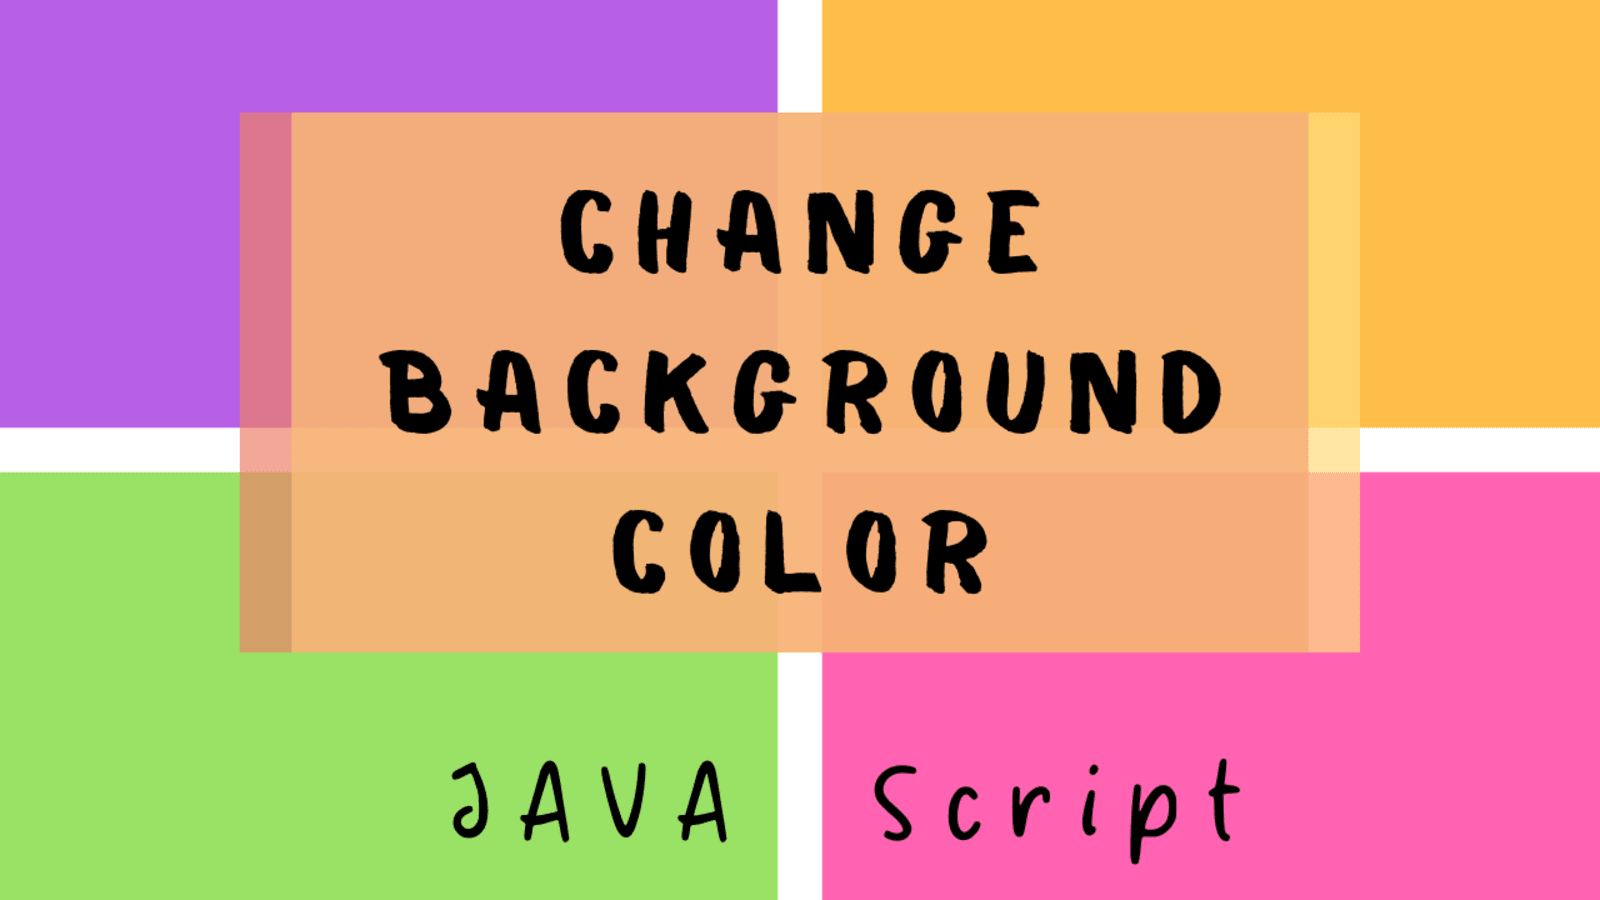 Bạn muốn có một trang web độc đáo với những màu sắc độc đáo? Hãy tìm hiểu cách sử dụng JavaScript Background Color Change để đổi màu nền của trang web của bạn theo cách độc đáo và trực quan hơn. Xem hình ảnh để tìm cảm hứng cho trang web của bạn.